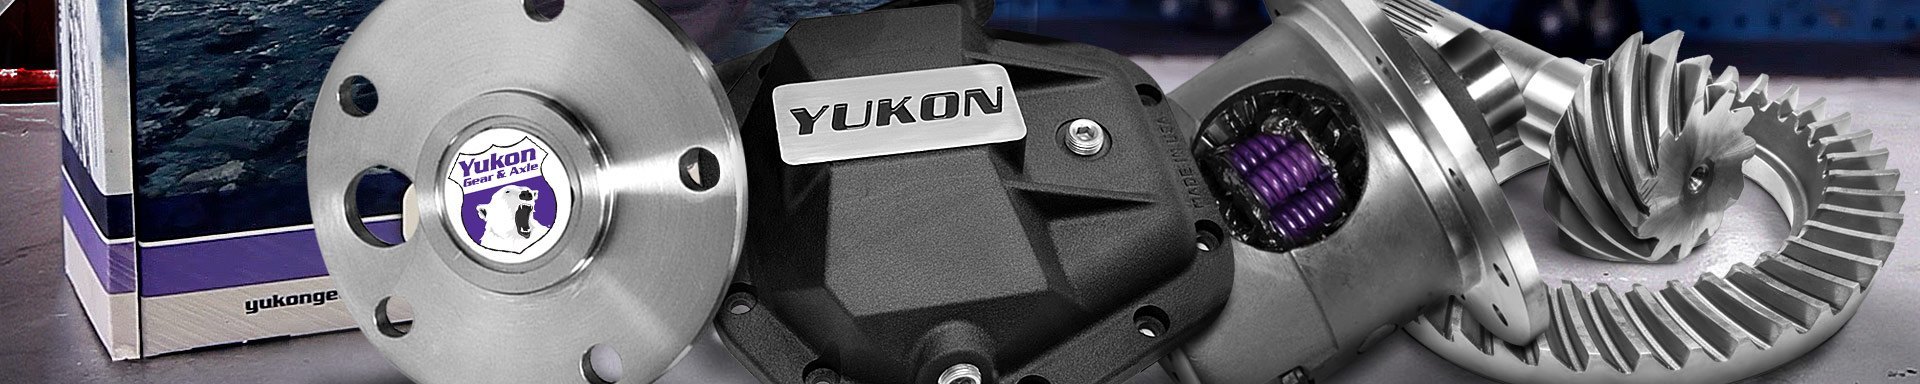 Yukon Gear & Axle Oils, Fluids, Lubricants